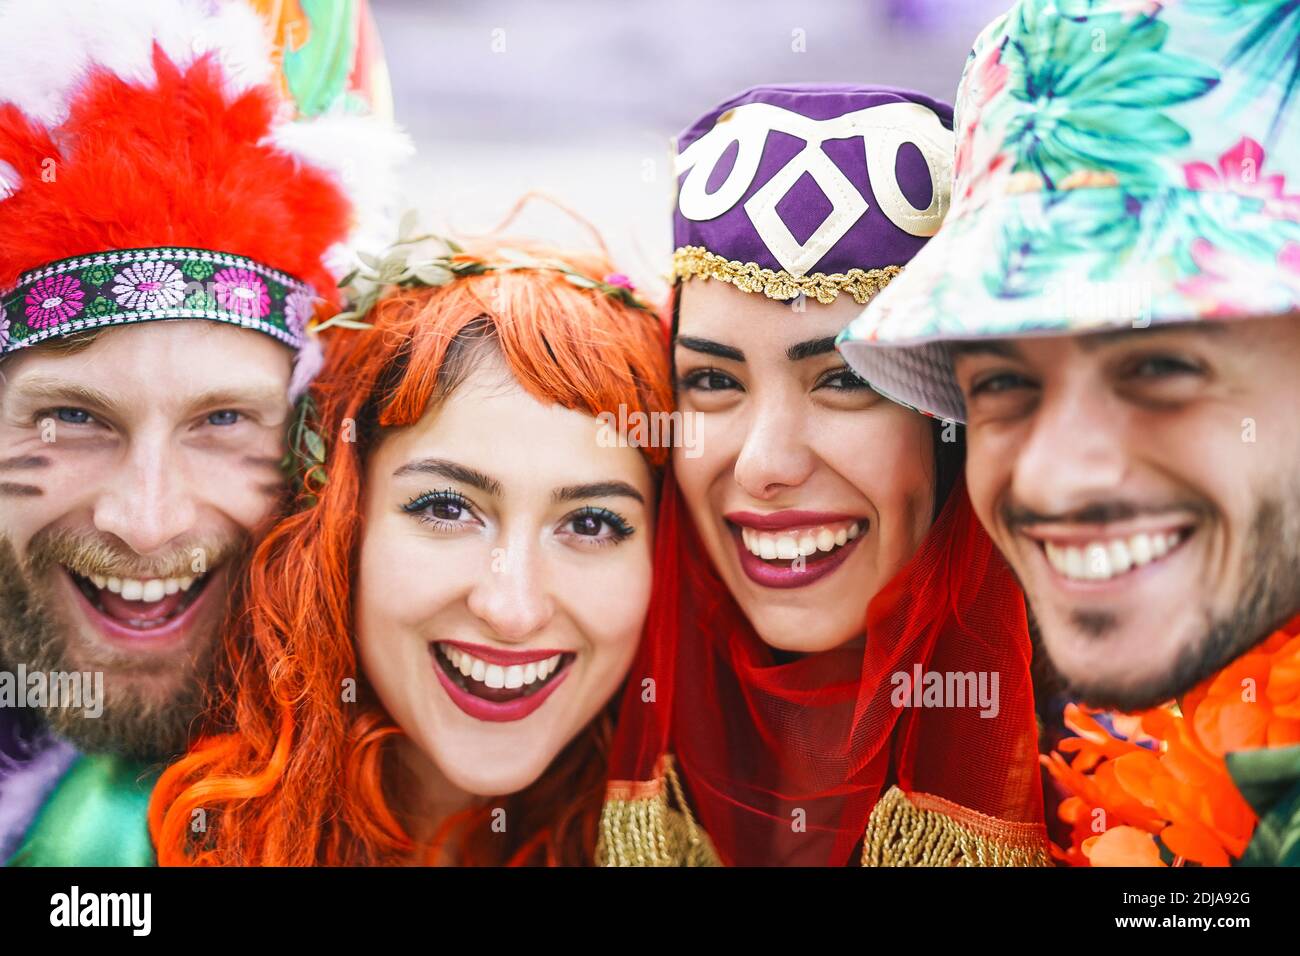 Happy friends feiern Faschingsparty im Freien - Porträt jung verrückt Leute, die Spaß haben, lustige Kostüme zu tragen Stockfoto